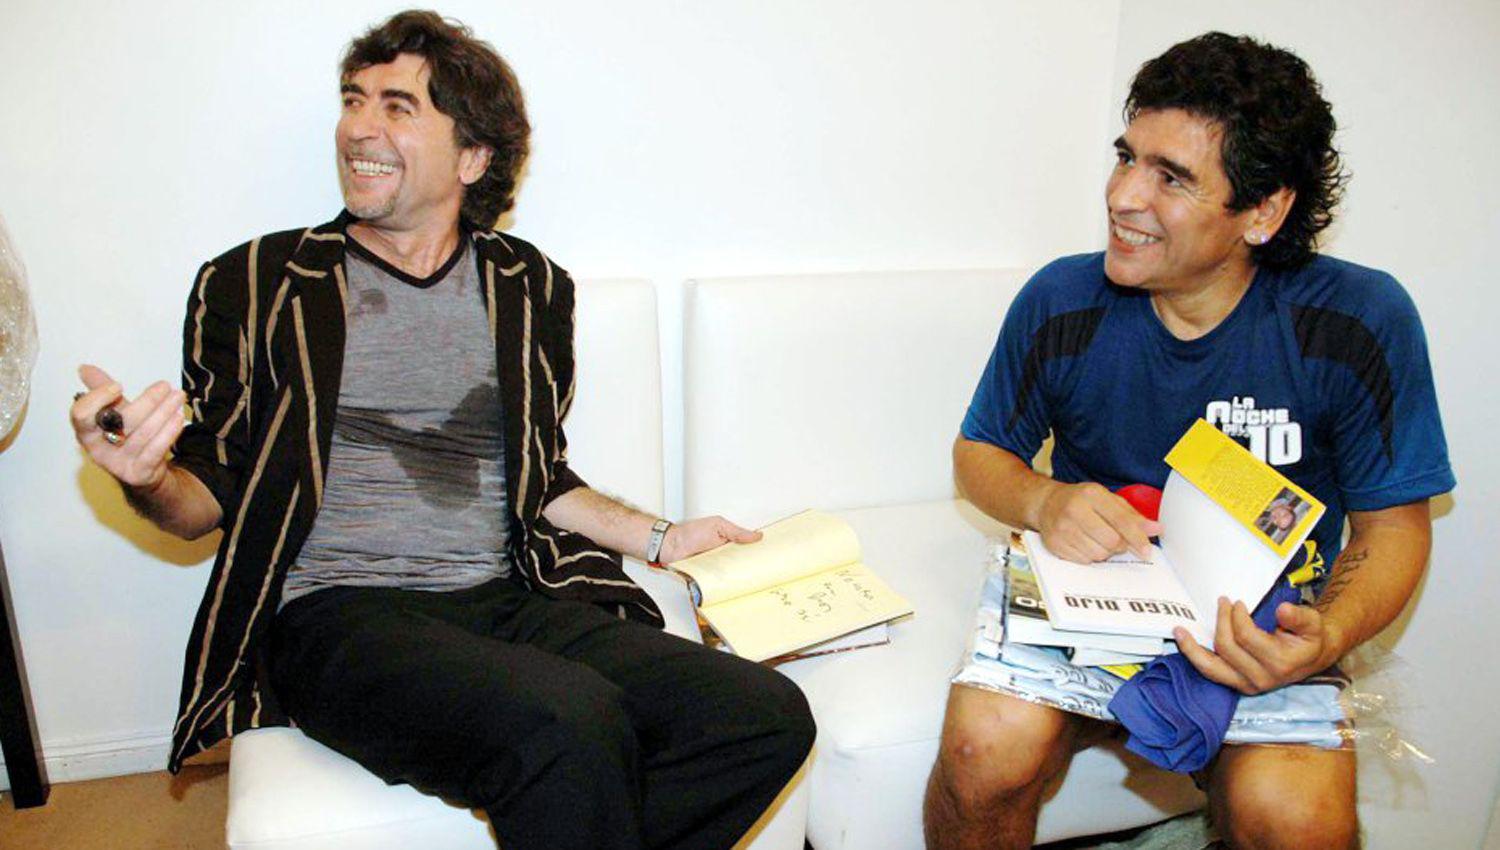 Joaquiacuten Sabina y su homenaje al 10- ldquoDescanse en paz Diego Armando Maradona muera la muerterdquo